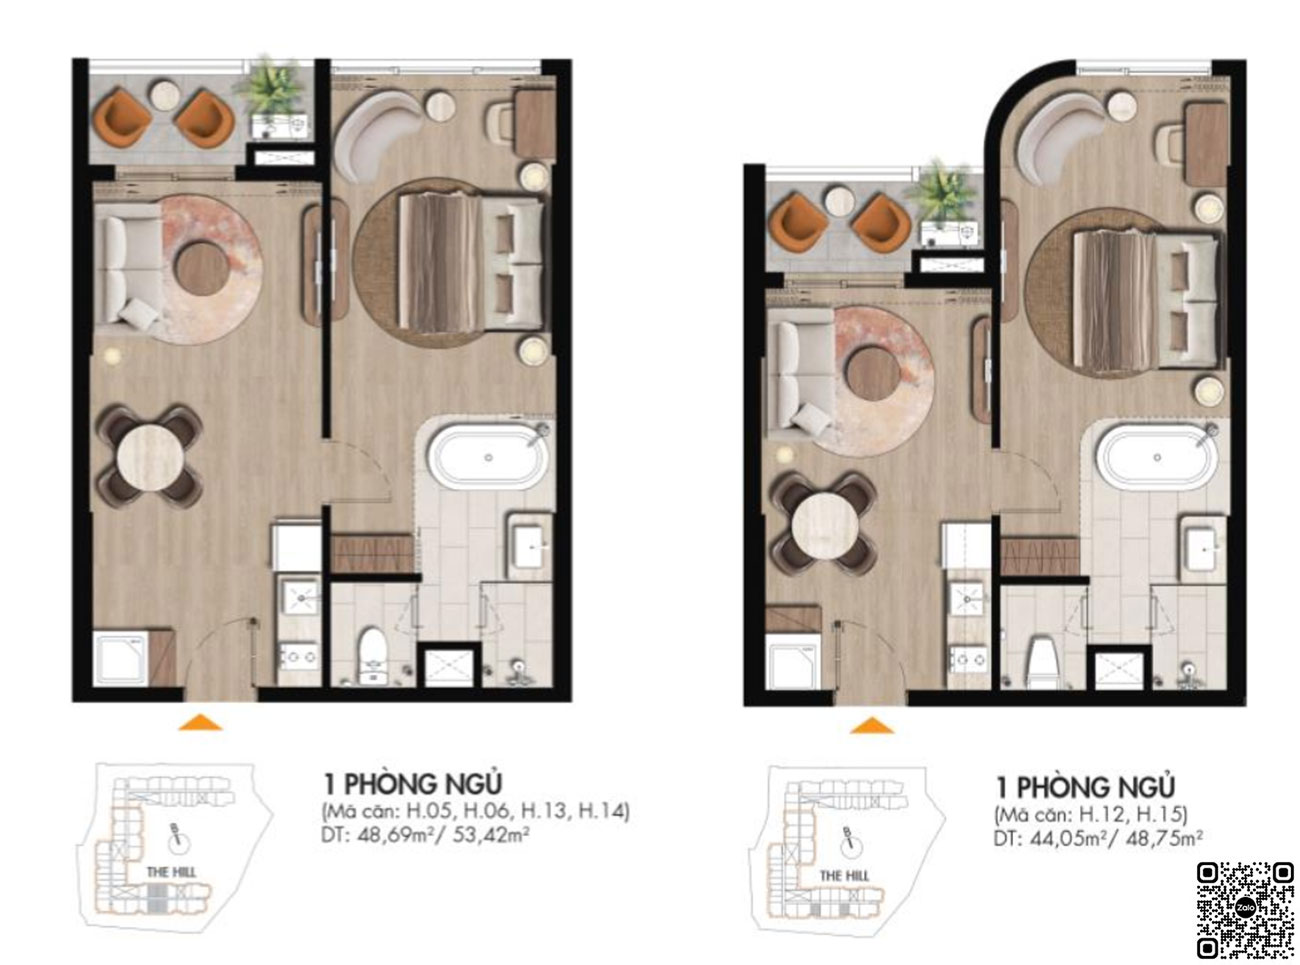 Thiết kế căn hộ du lịch dạng 1 phòng ngủ dự án FiveSeasons Homes Vũng Tàu